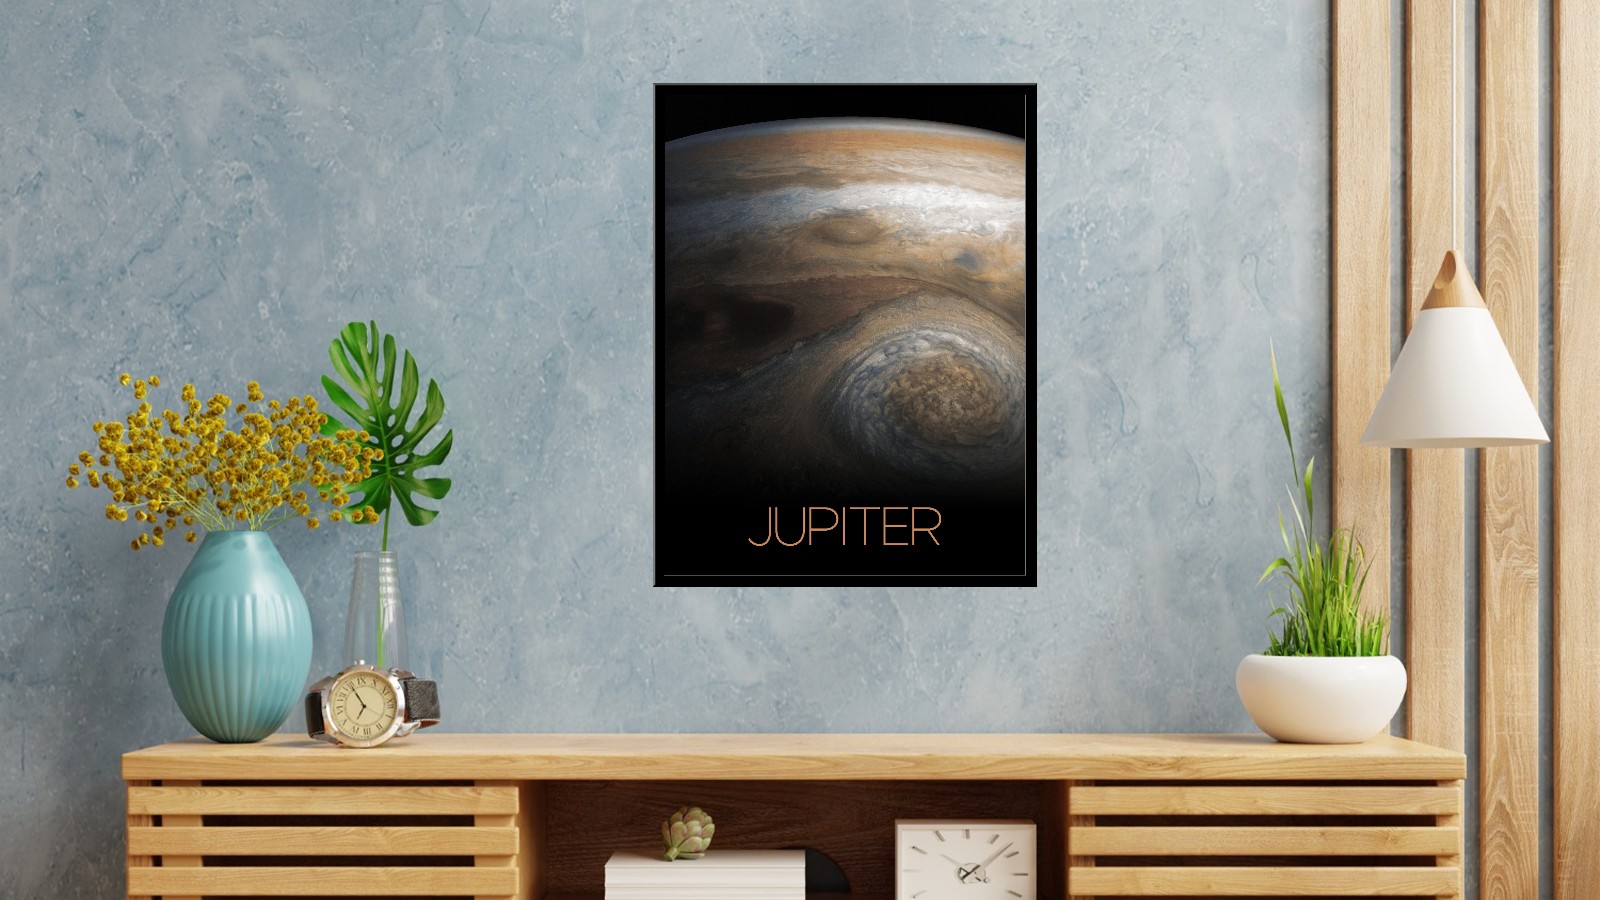 Jupiter - 2